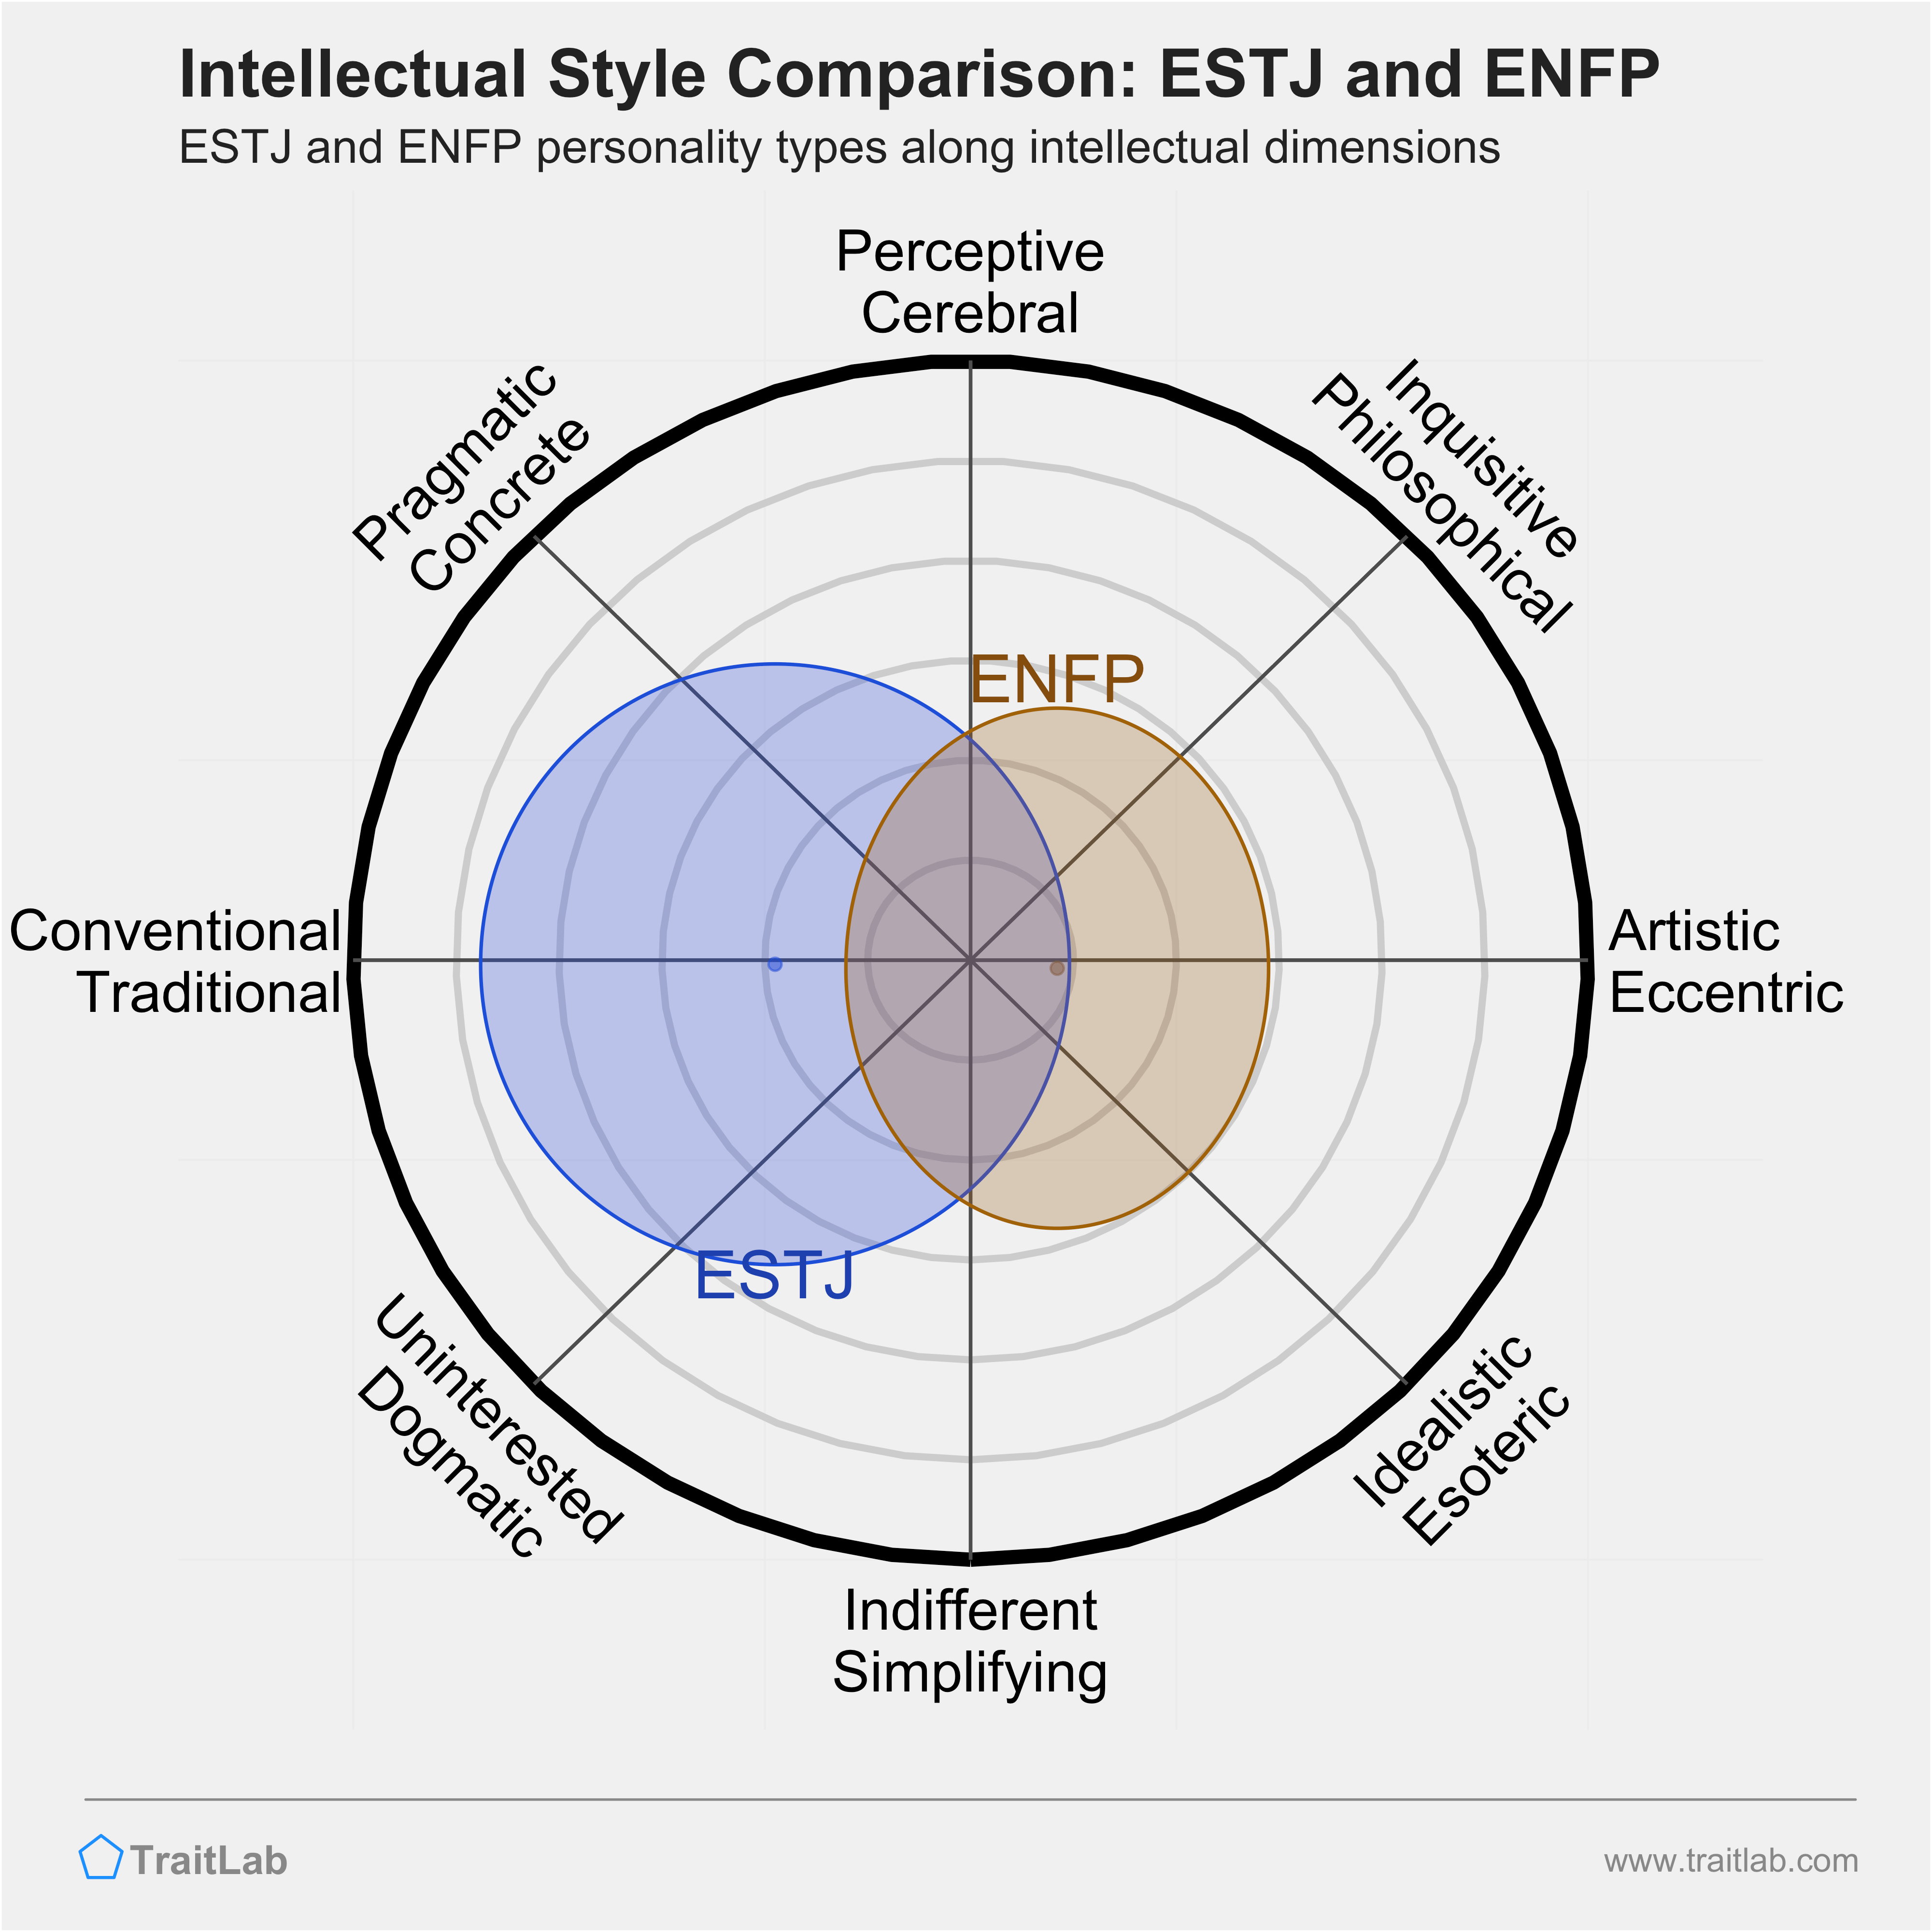 ESTJ and ENFP comparison across intellectual dimensions